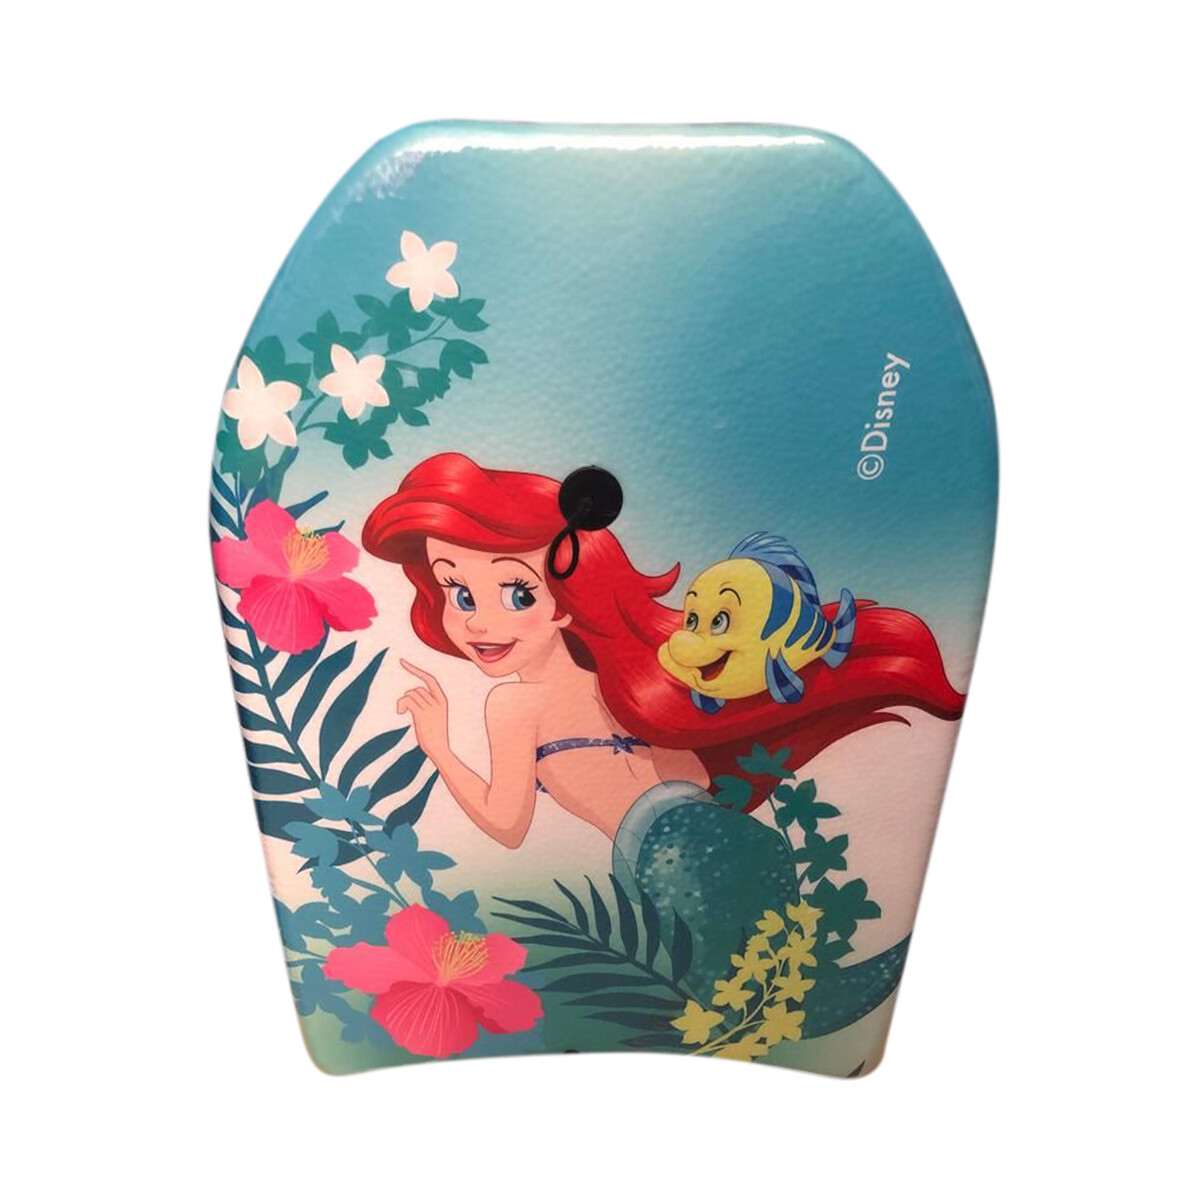 Tabla Morey Disney Princesas y la Sirenita 45 x 66 cm - La Sirenita 